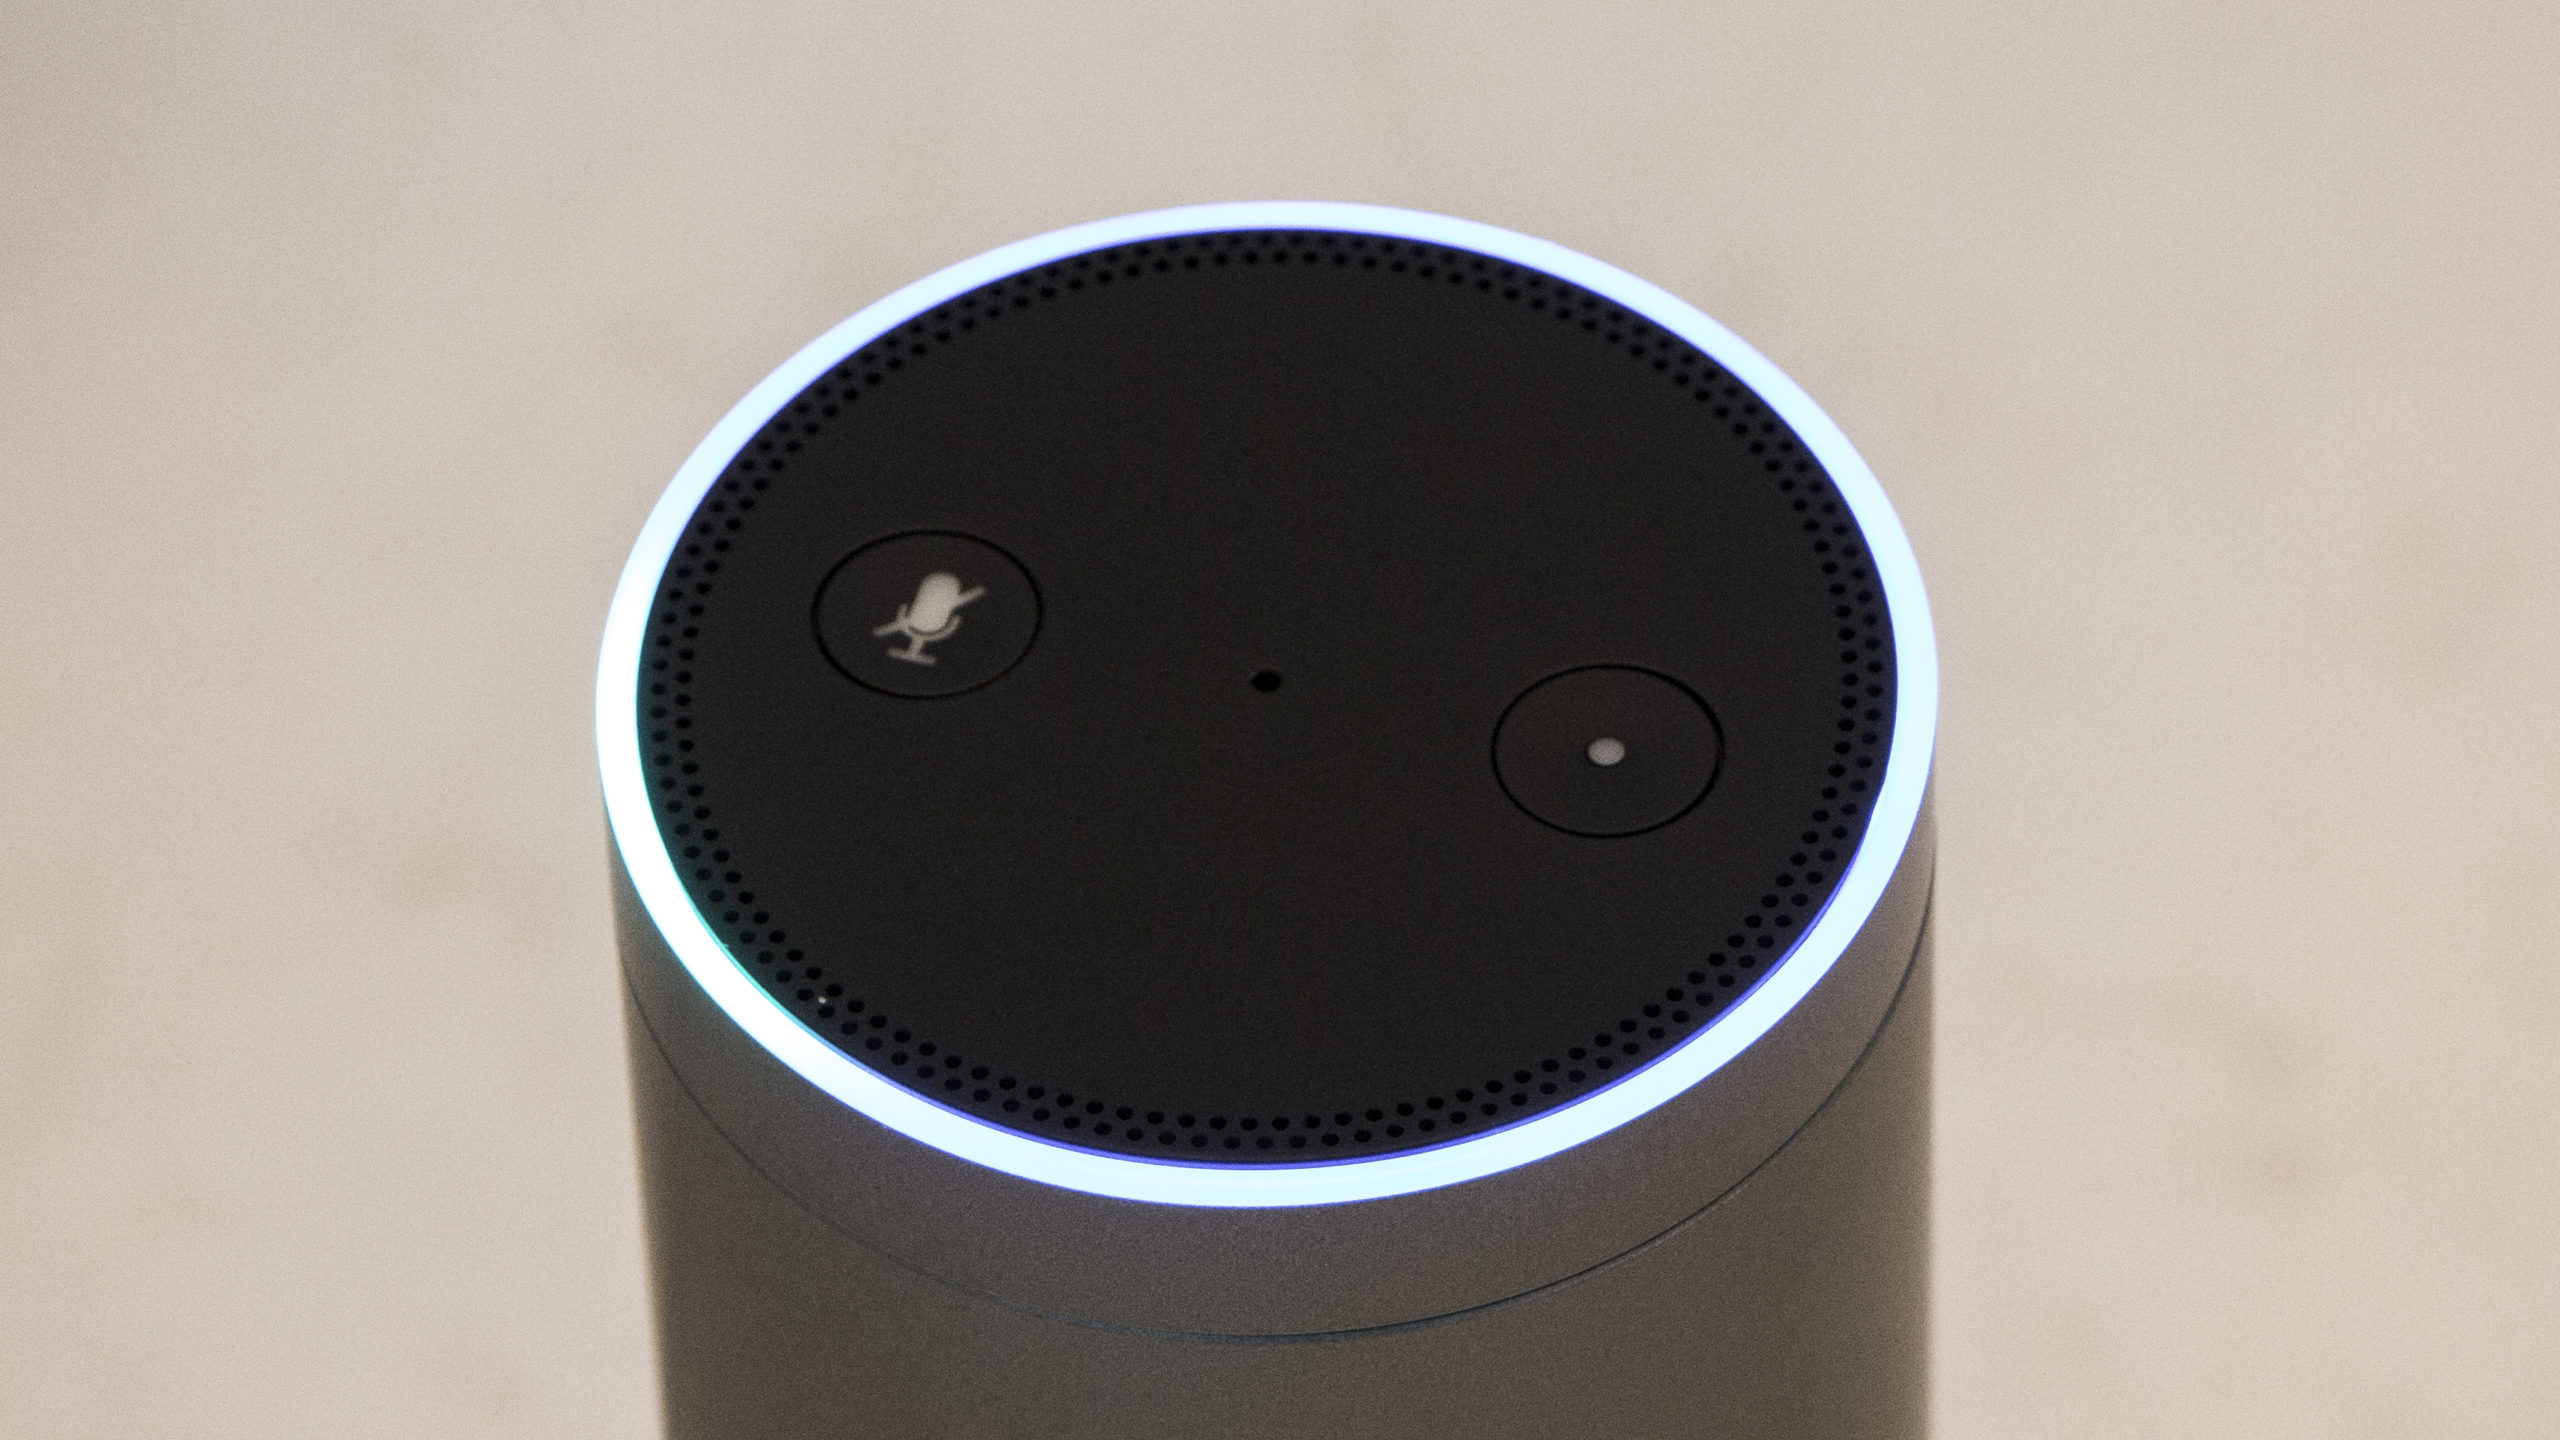 Amazon Echo Plus: The Gizmodo Review